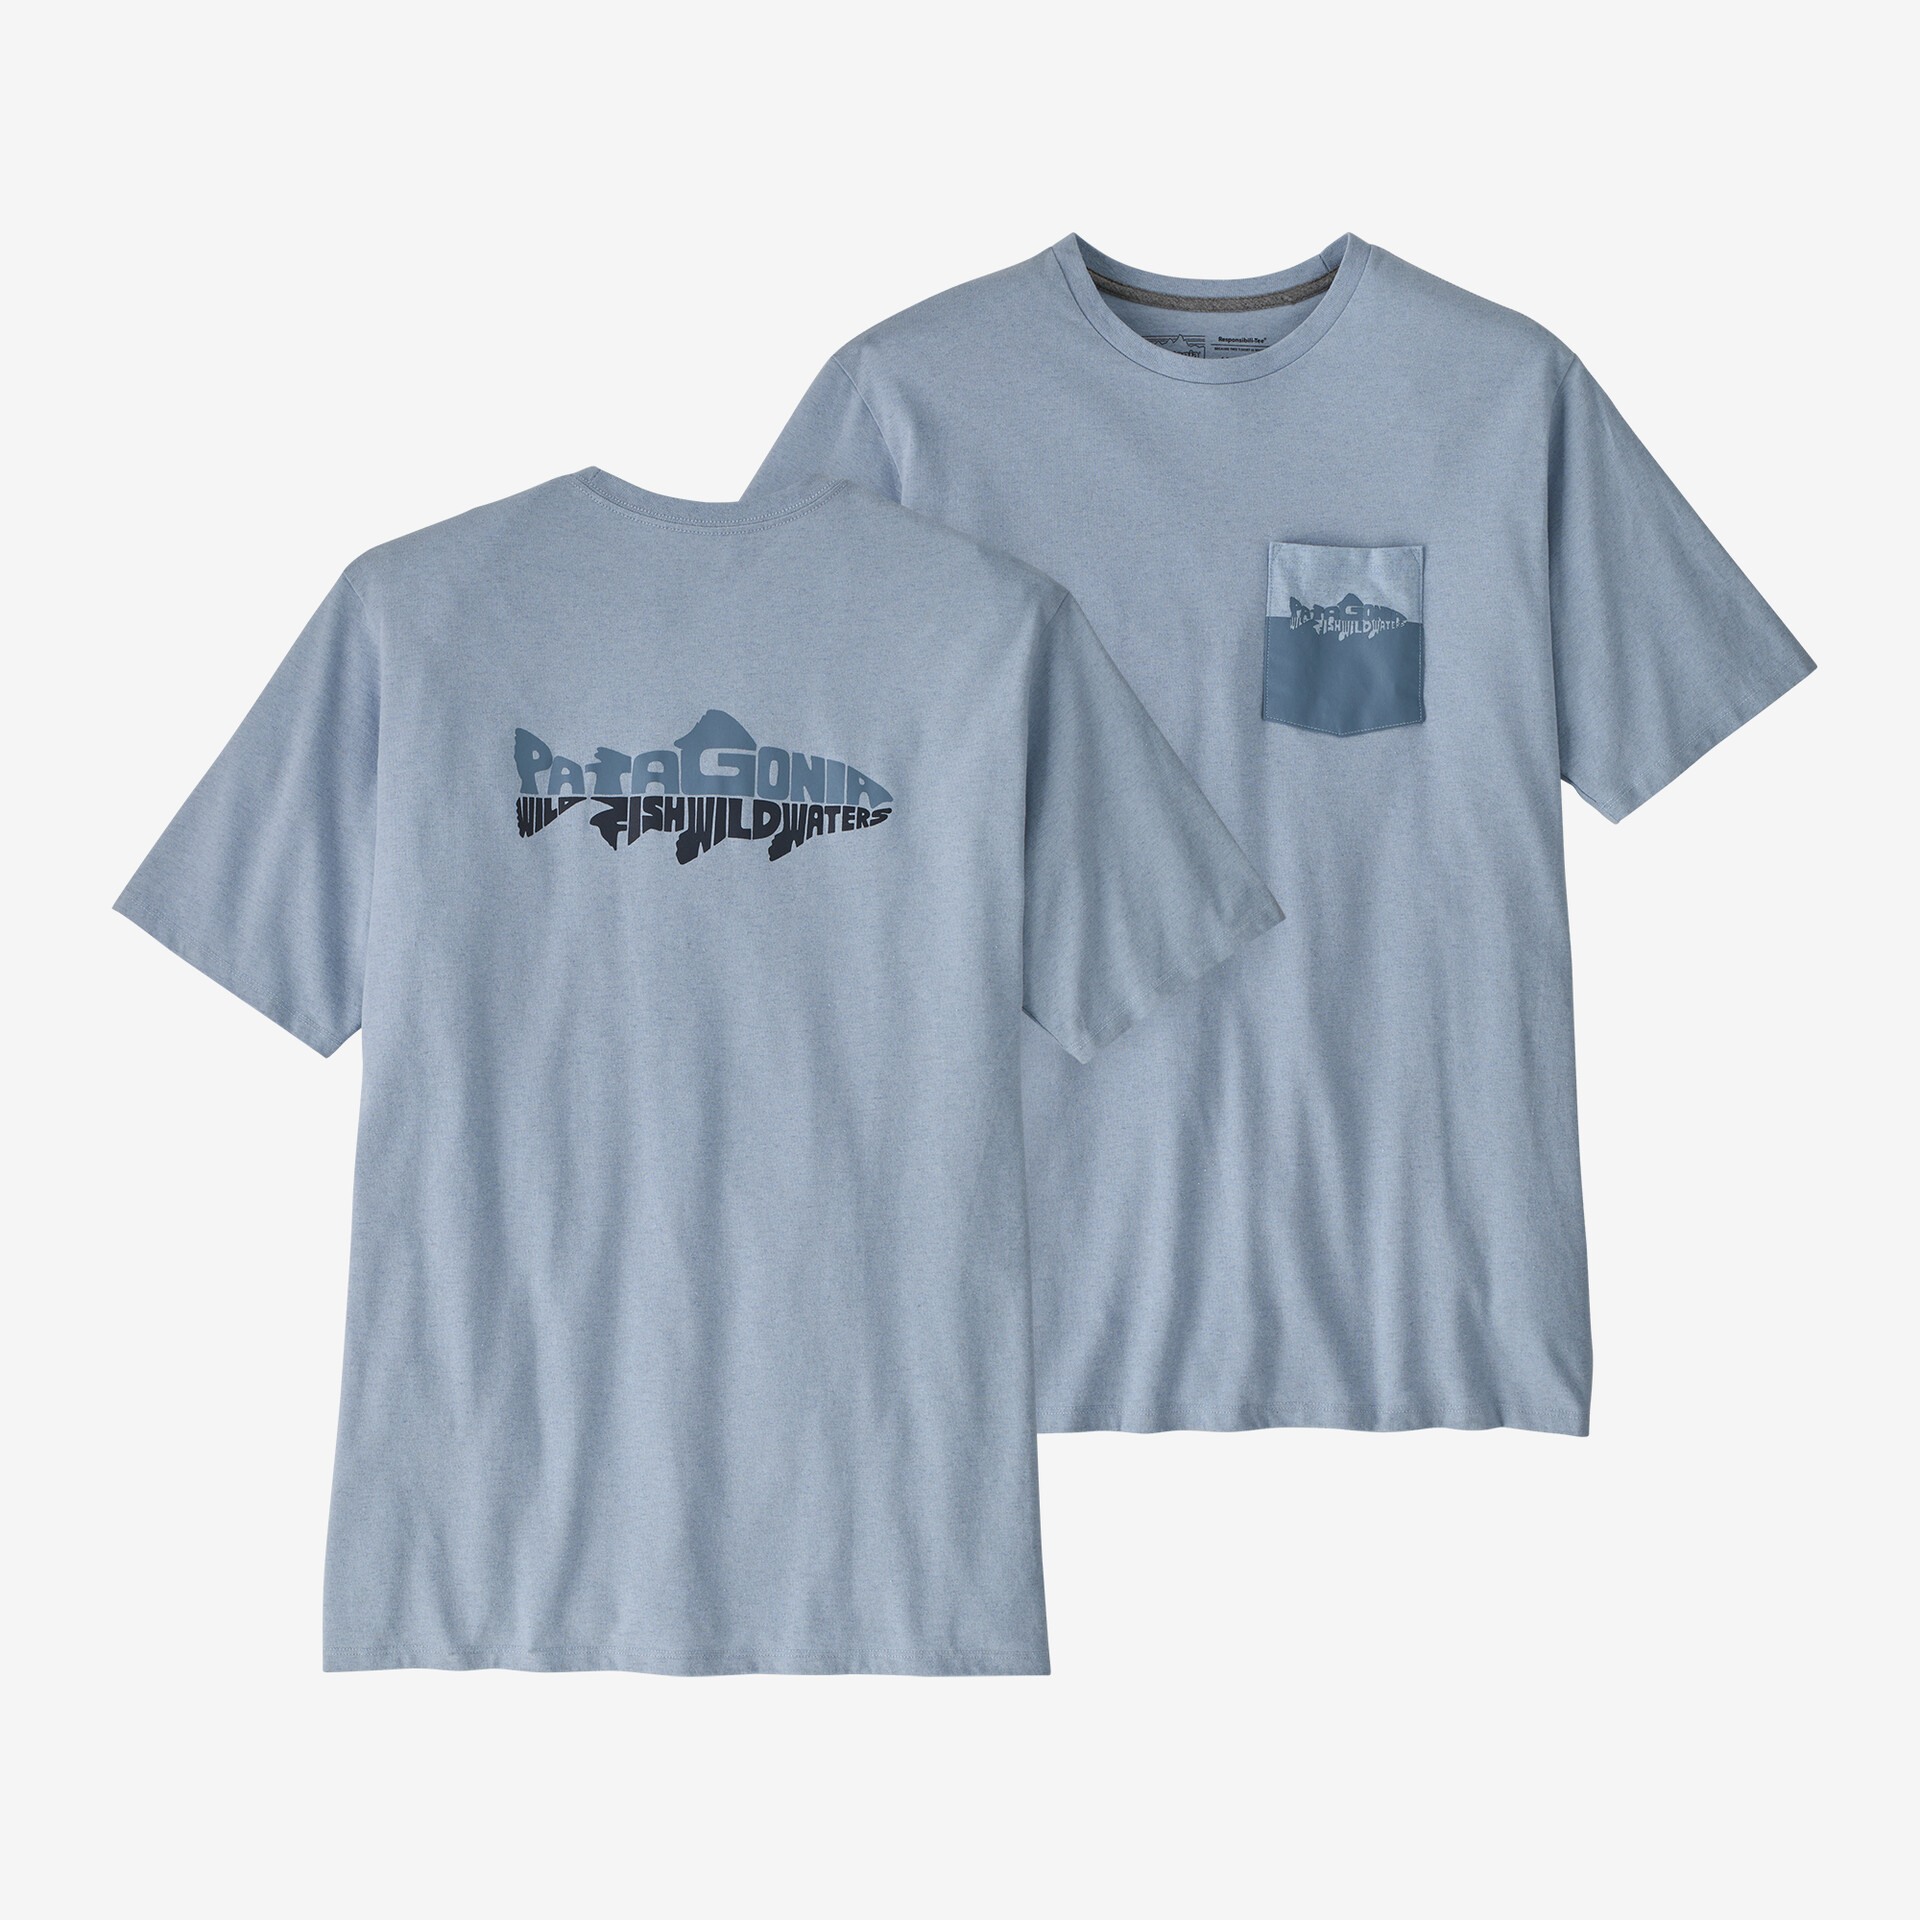 Мужская ответственная футболка с карманом Wild Waterline Patagonia, паровой синий мужская ответственная футболка с логотипом и карманом patagonia серый